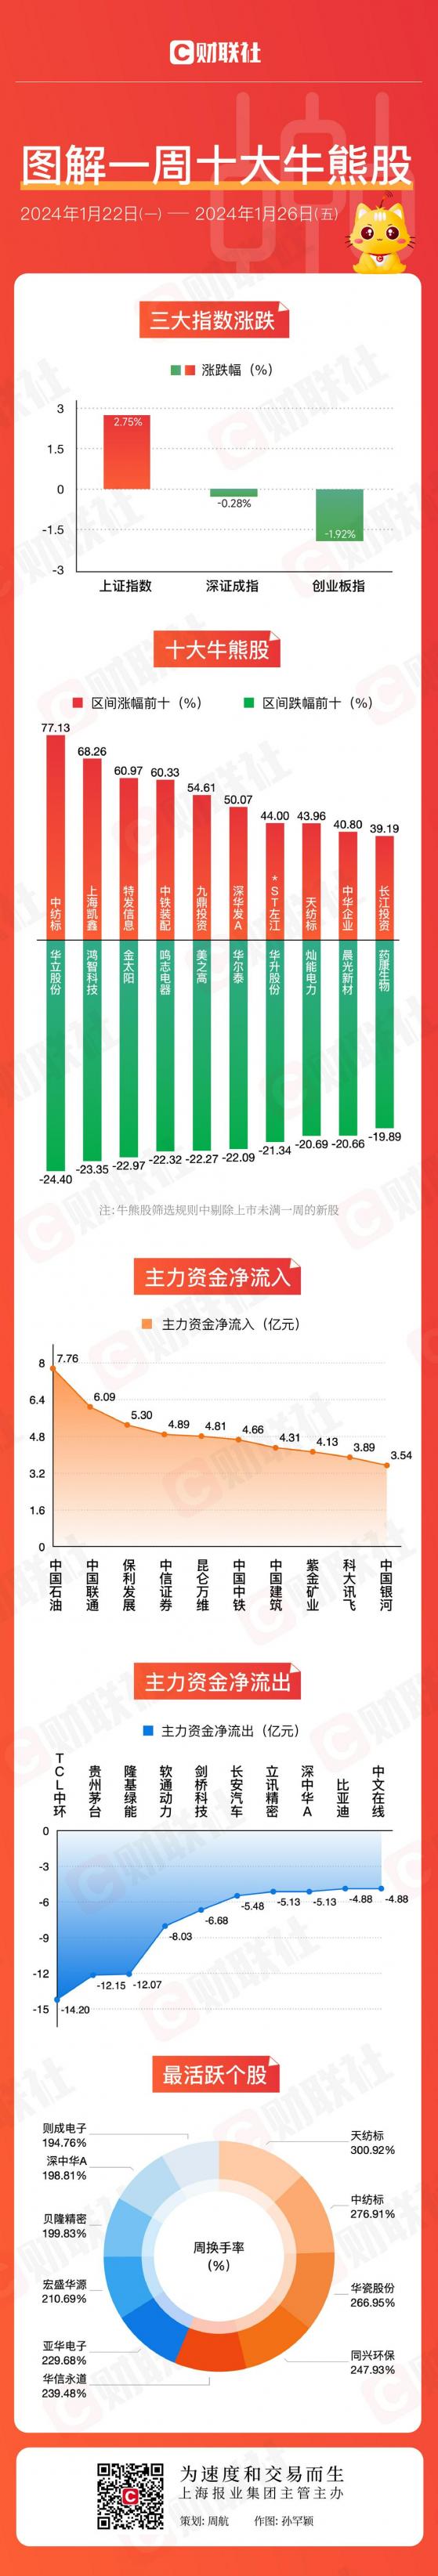 【图解牛熊股】国企股、上海本地股表现强势 两大光伏龙头遭主力大笔甩卖